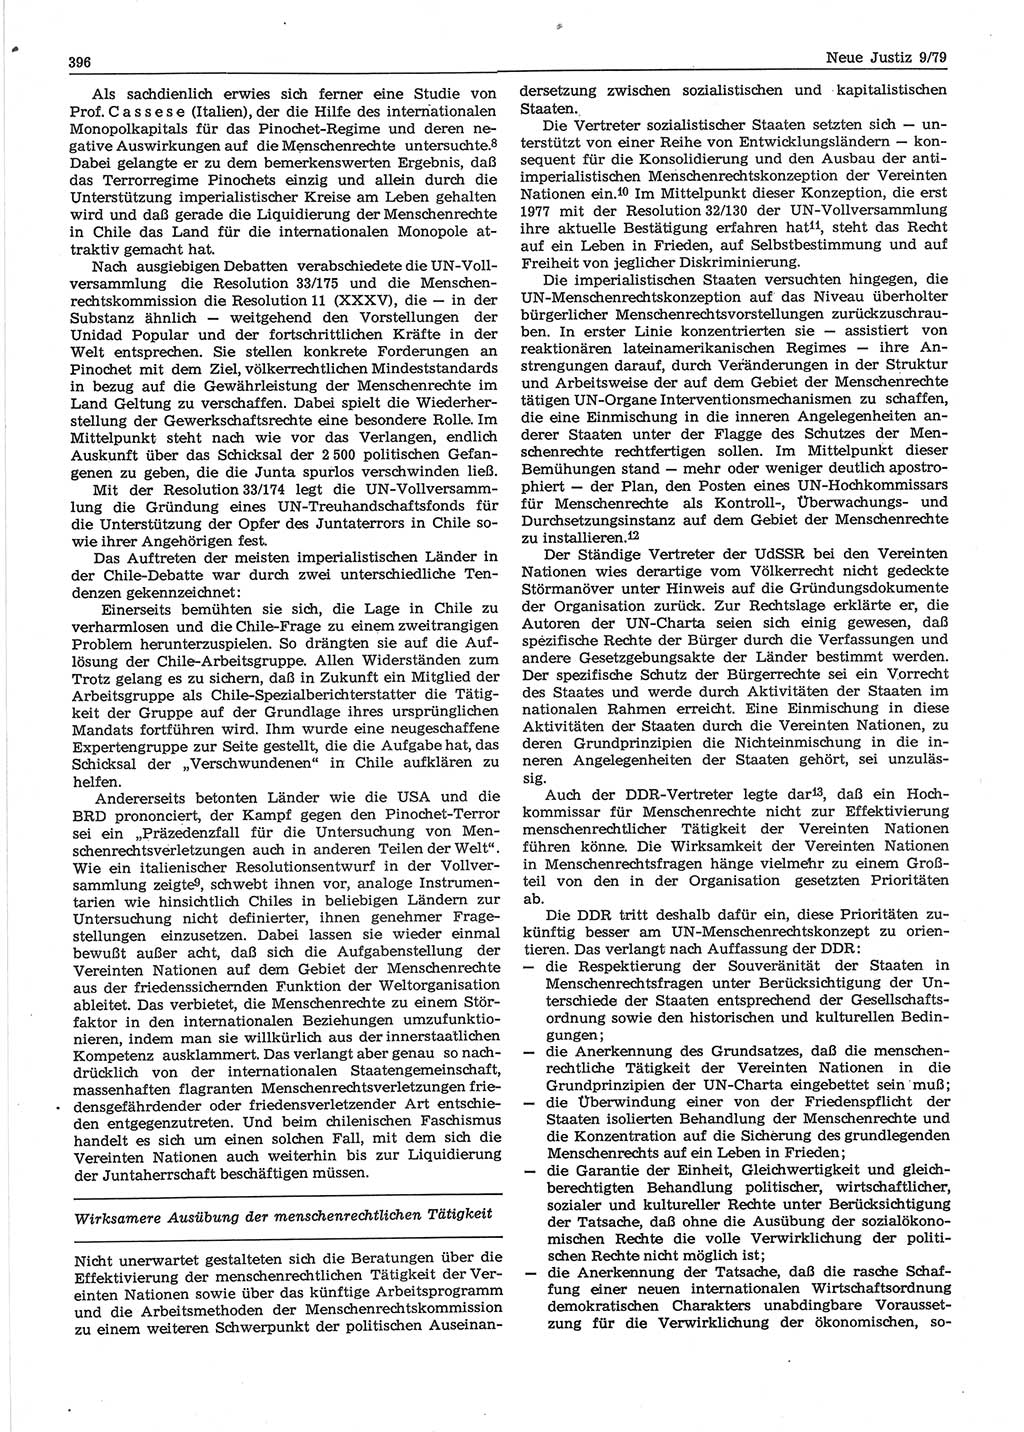 Neue Justiz (NJ), Zeitschrift für sozialistisches Recht und Gesetzlichkeit [Deutsche Demokratische Republik (DDR)], 33. Jahrgang 1979, Seite 396 (NJ DDR 1979, S. 396)